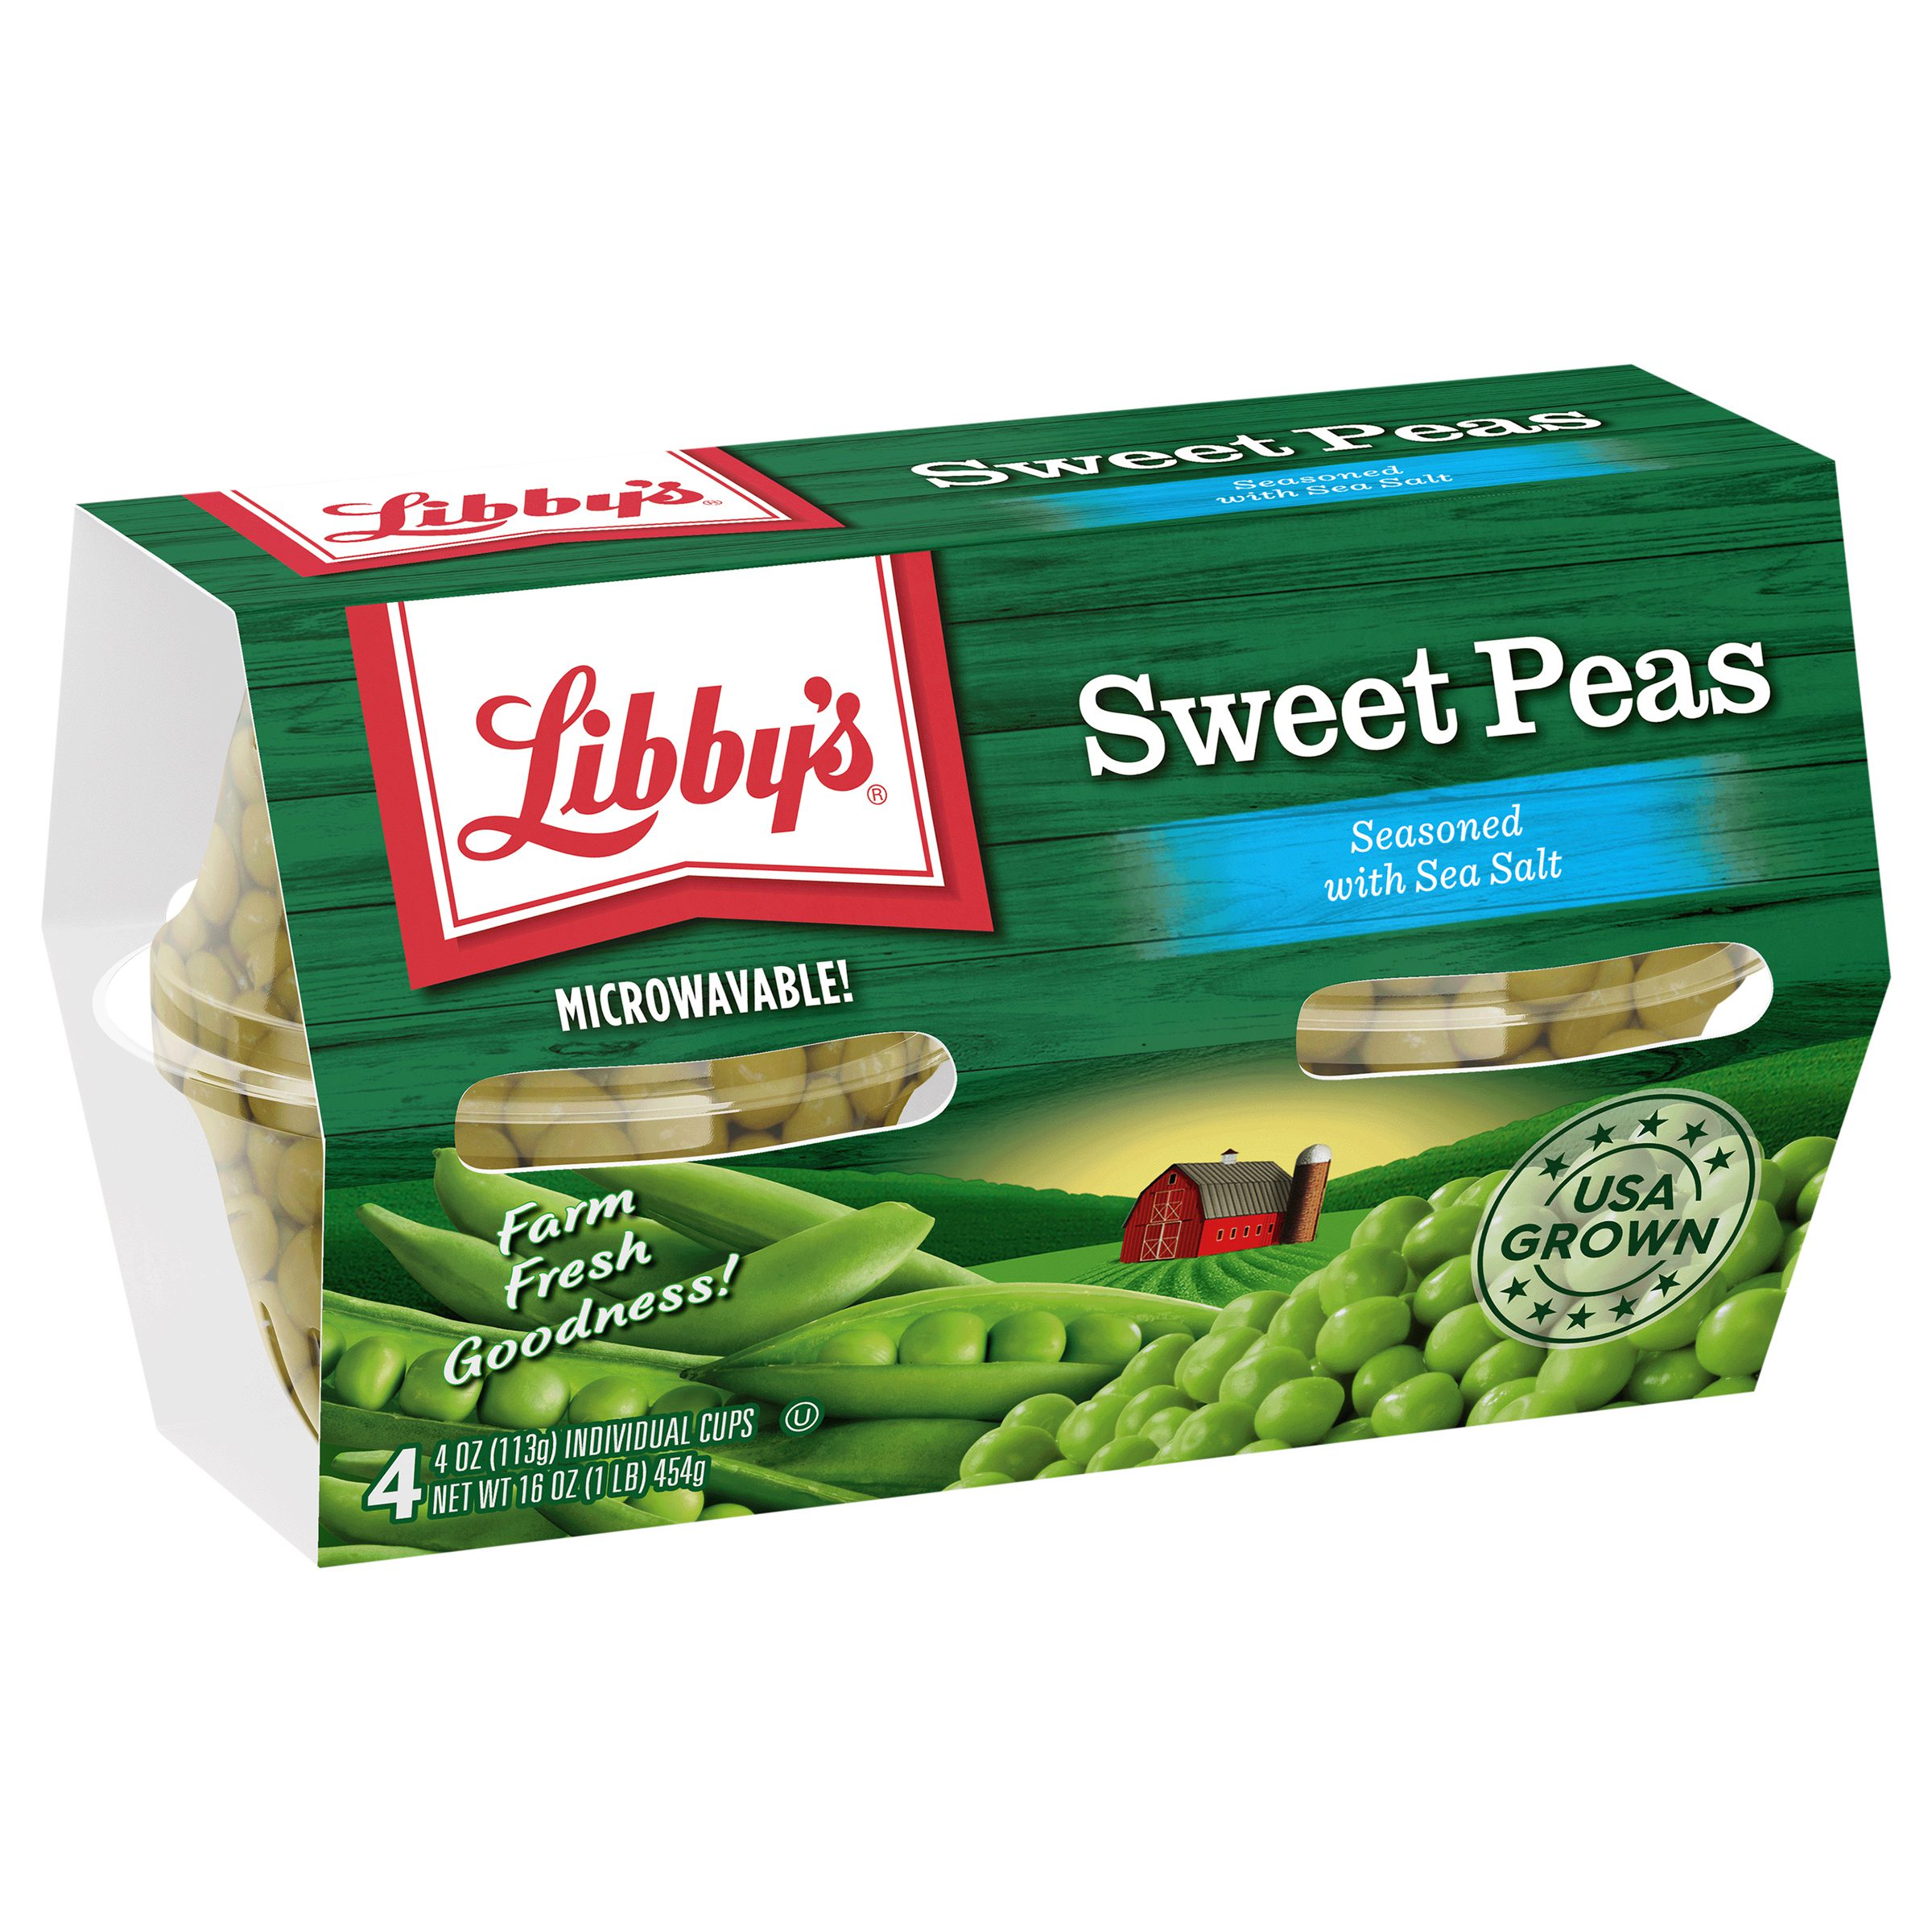 Sweet Peas, 4 oz. Cups, 4-Pack